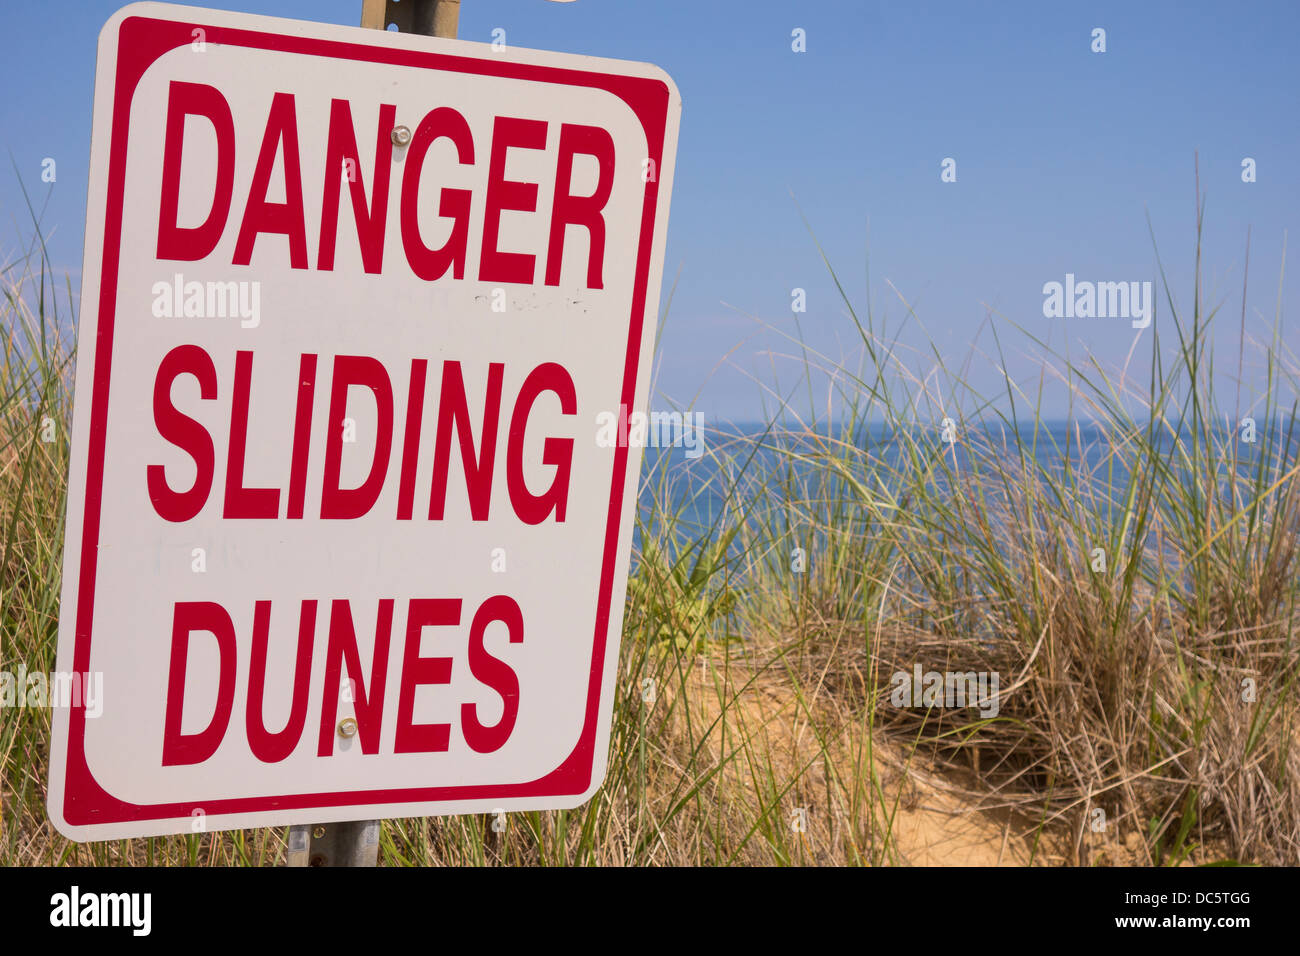 CAPE Cod, Massachusetts, USA - Danger Dunes coulissante signe, au White Crest beach près de ville de Wellfleet. Banque D'Images